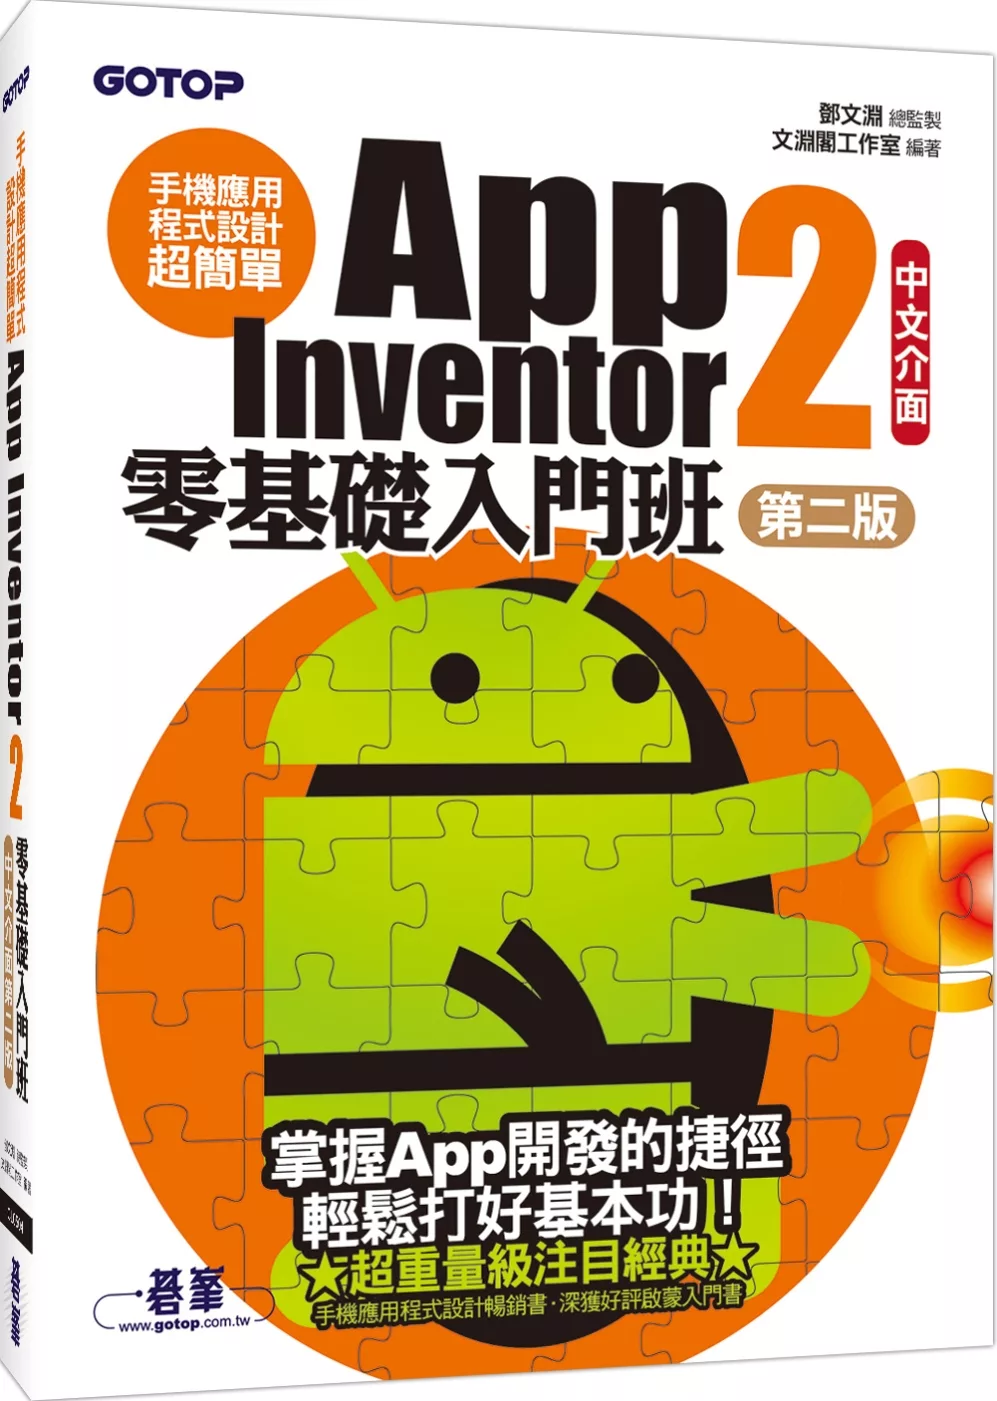 手機應用程式設計超簡單：App Inventor 2零基礎入門班(中文介面第二版) (附影音/範例/架設解說pdf)